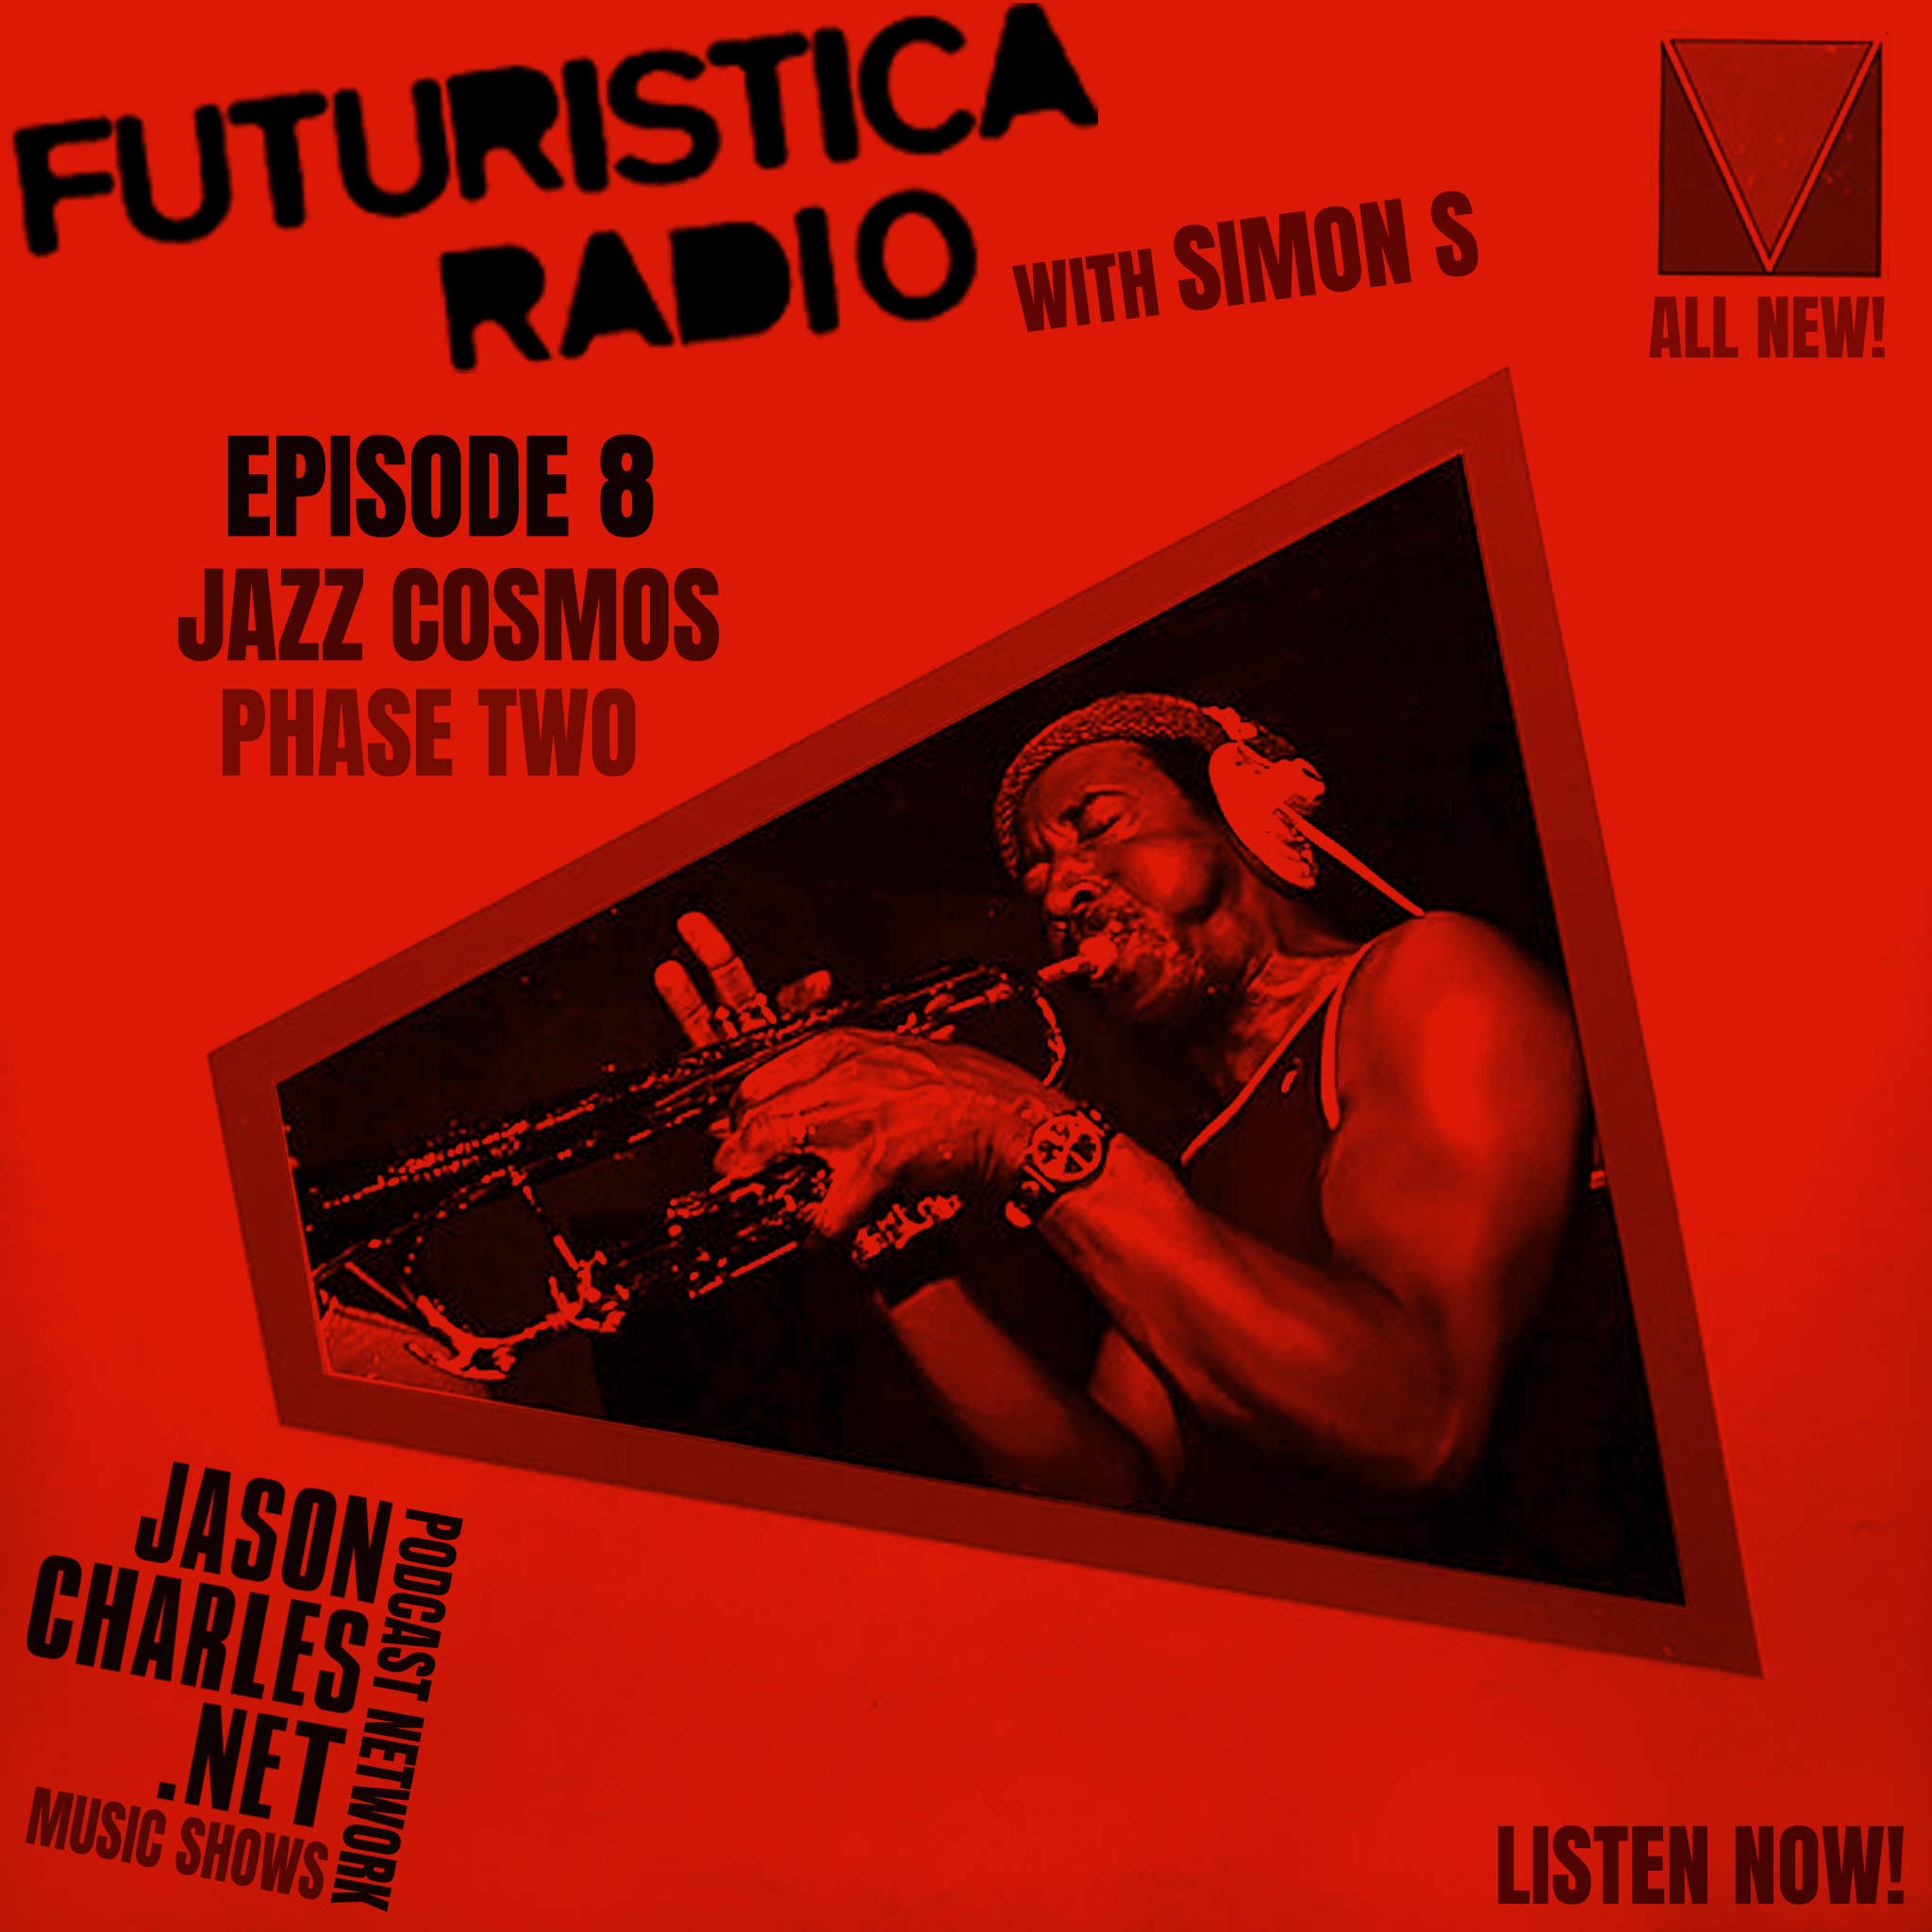 FUTURISTICA RADIO with Simon S Episode 8 Jazz Cosmos - Phase Two